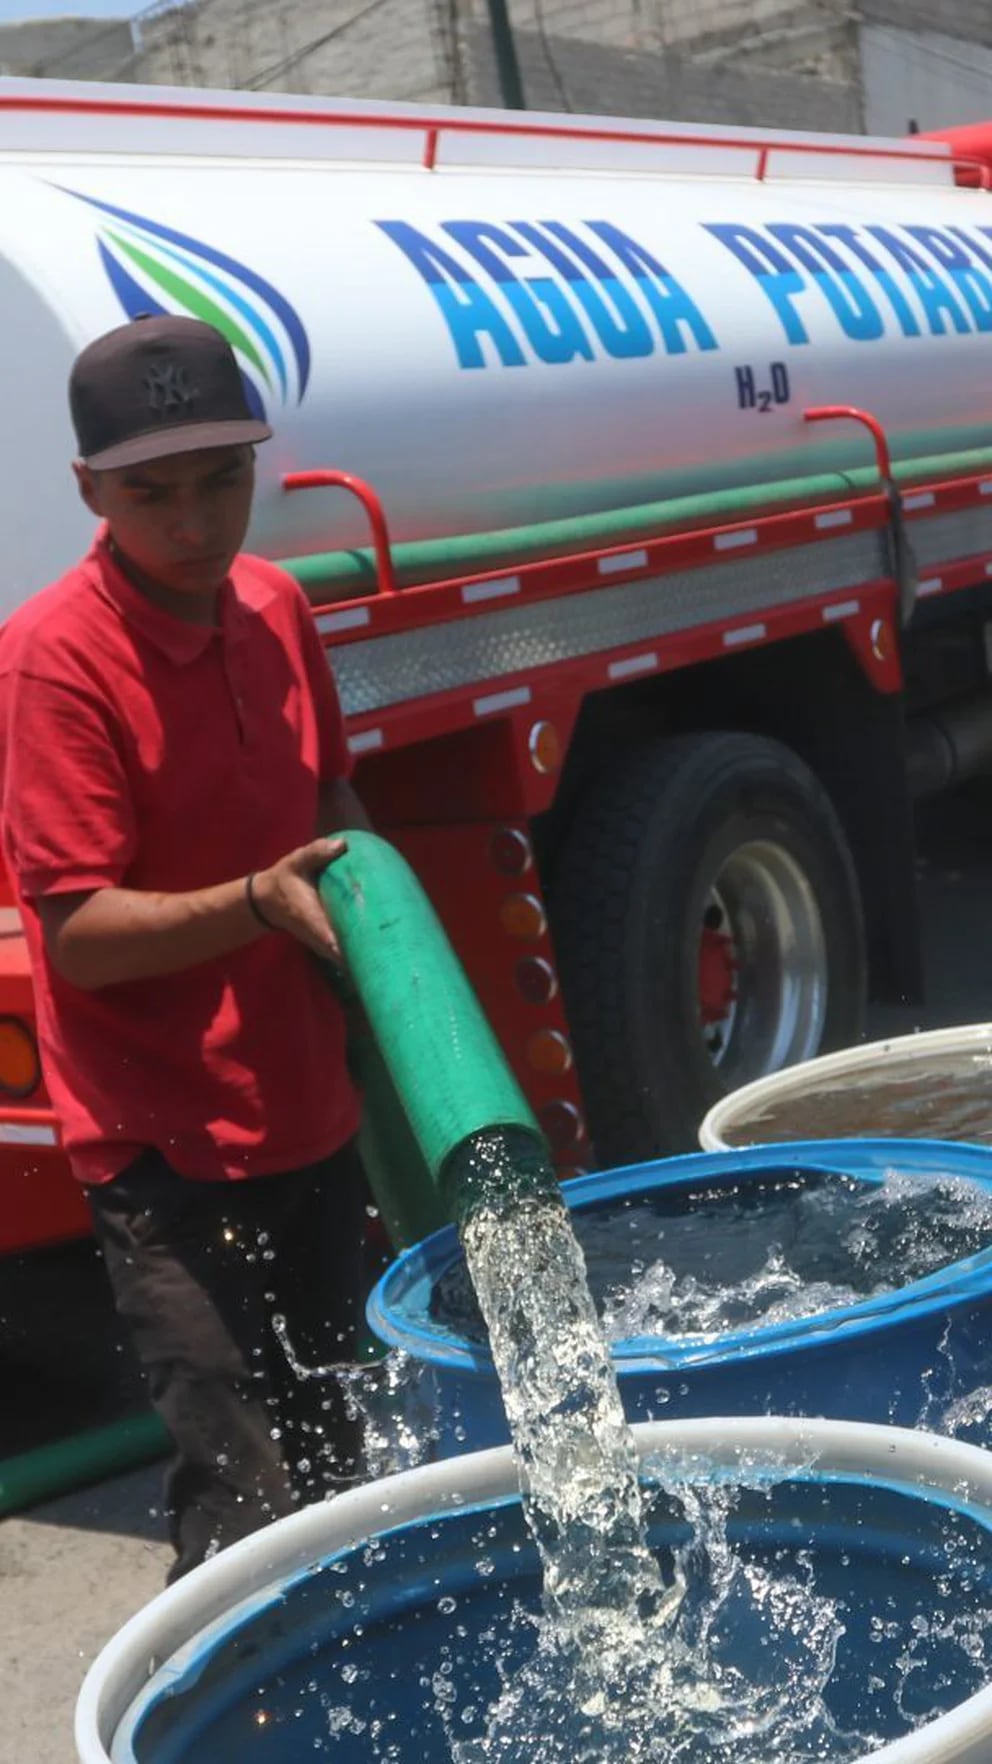 CDMX: ¿cómo puedo puedo pedir una pipa de agua gratis? - El Sol de México